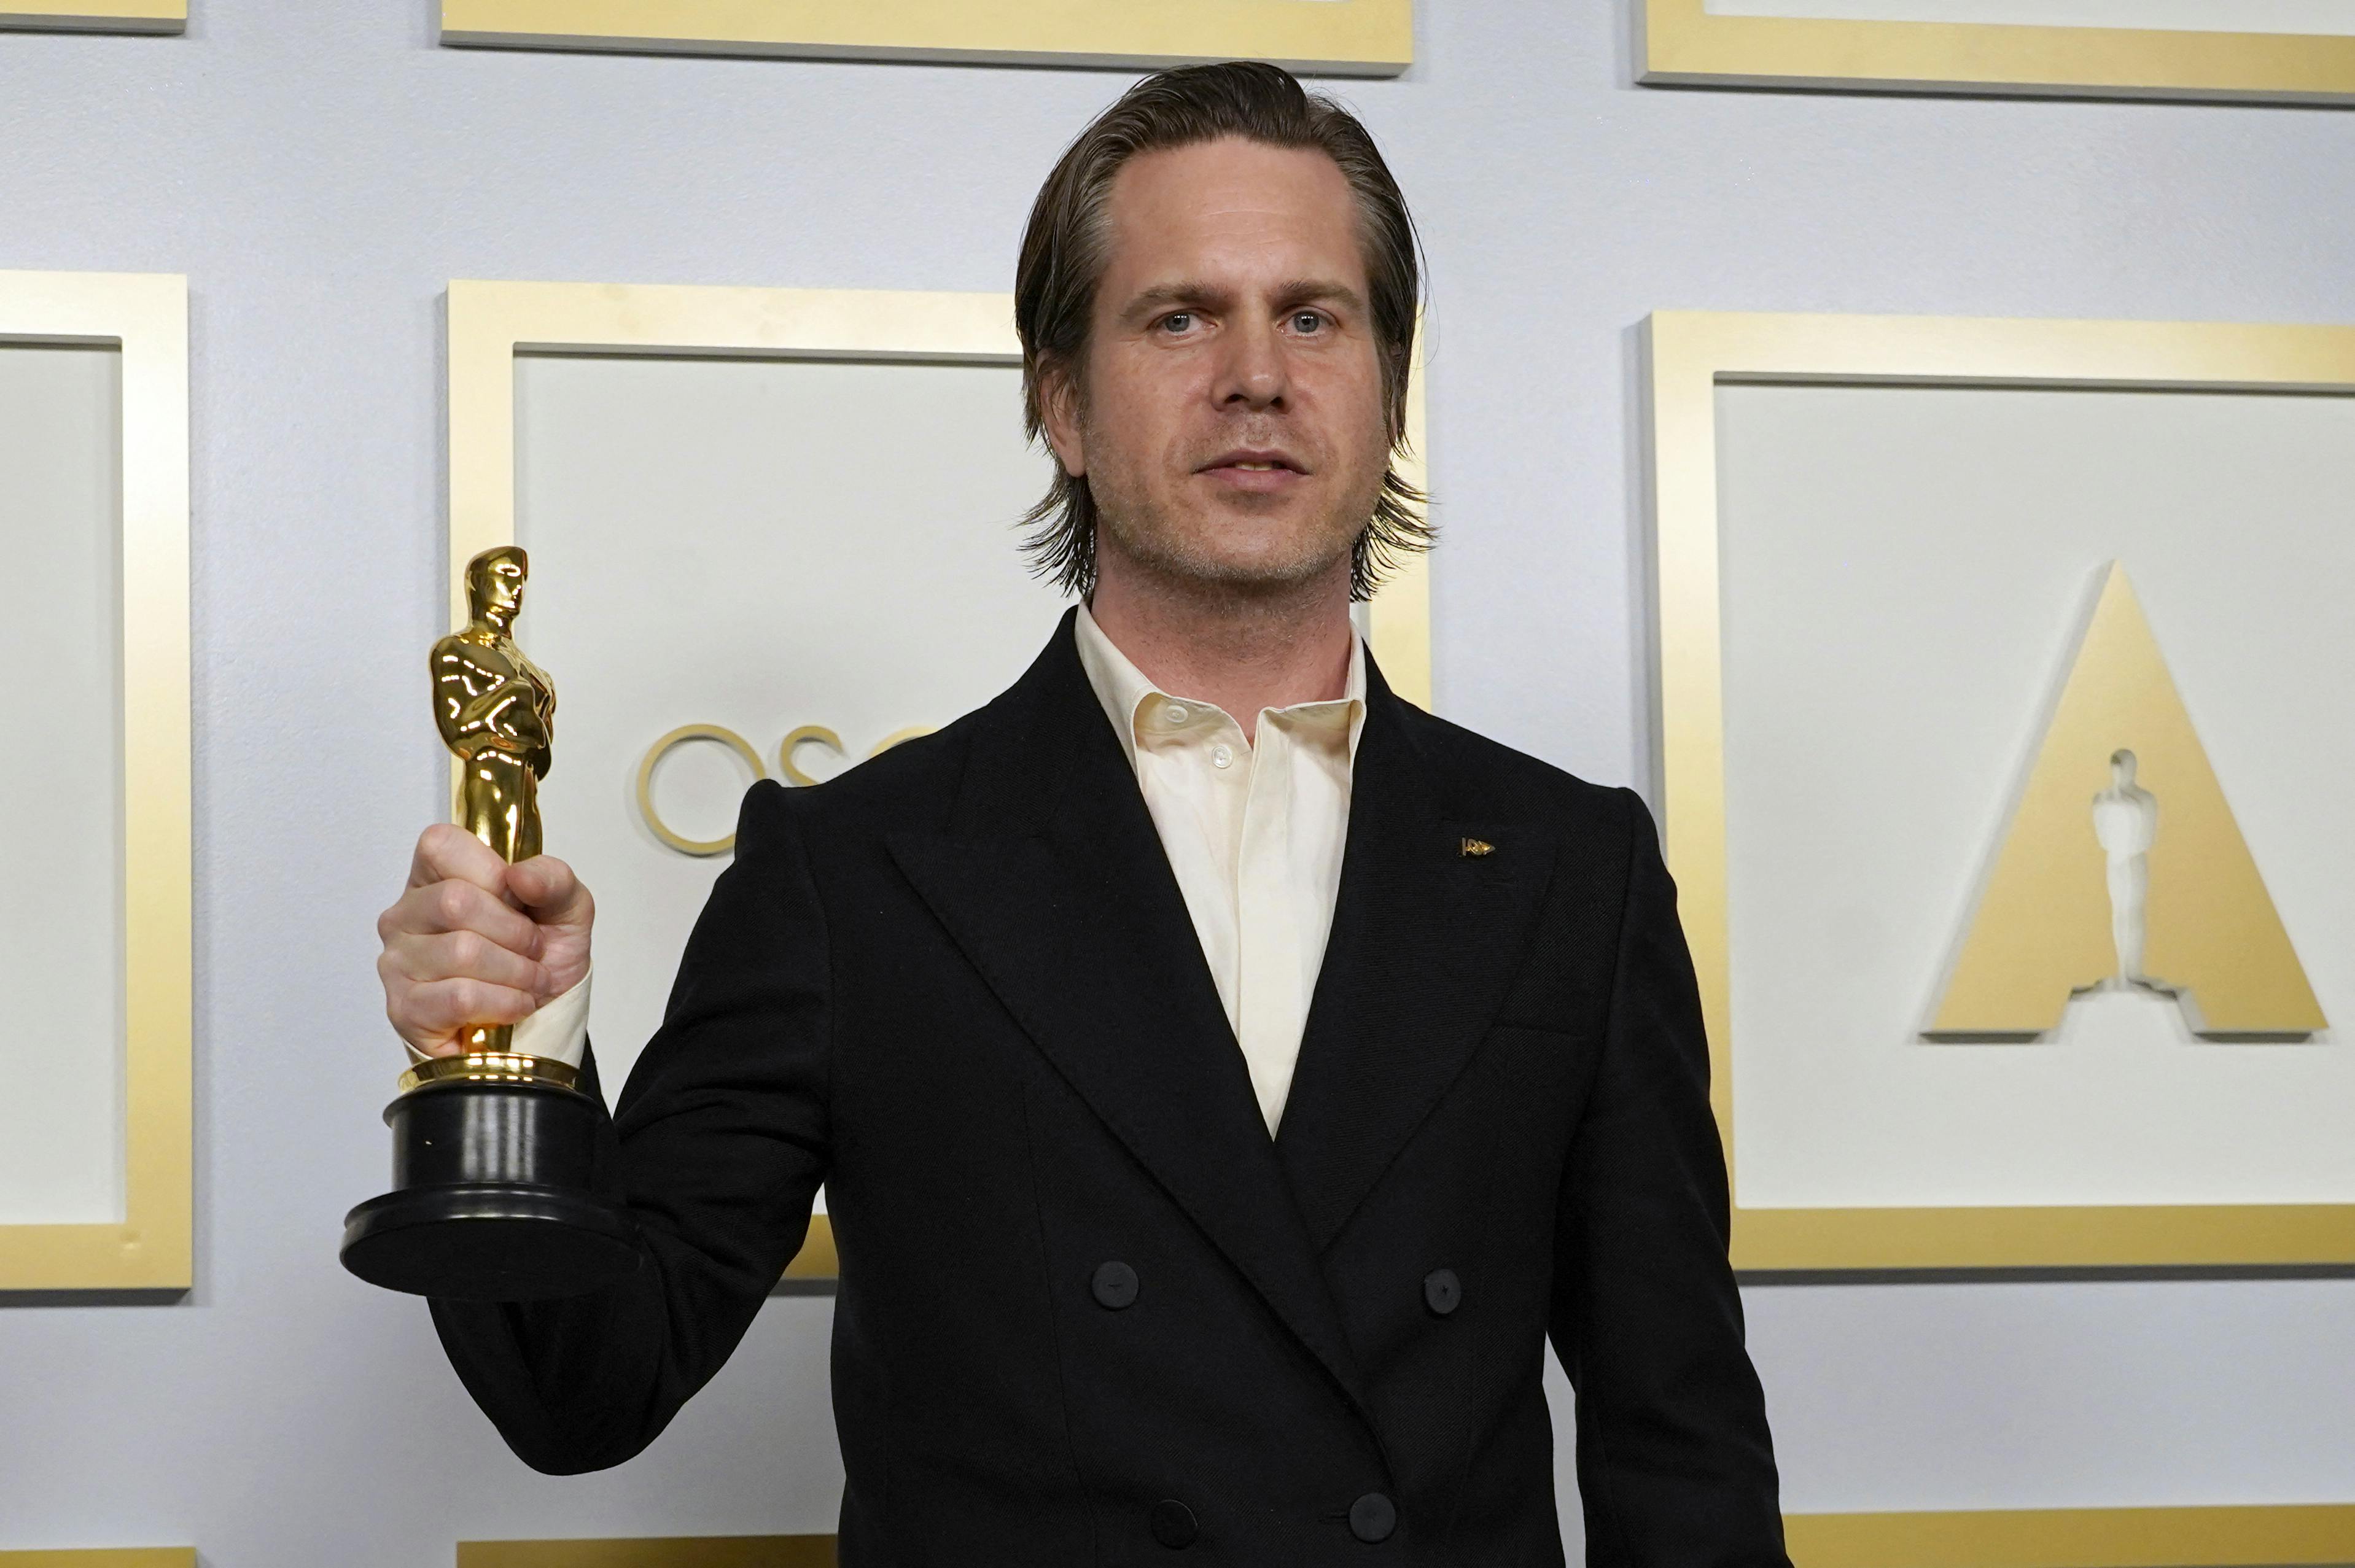 Den danske klipper vandt en fornem gylden statuette ved Oscar-uddelingen i 2021